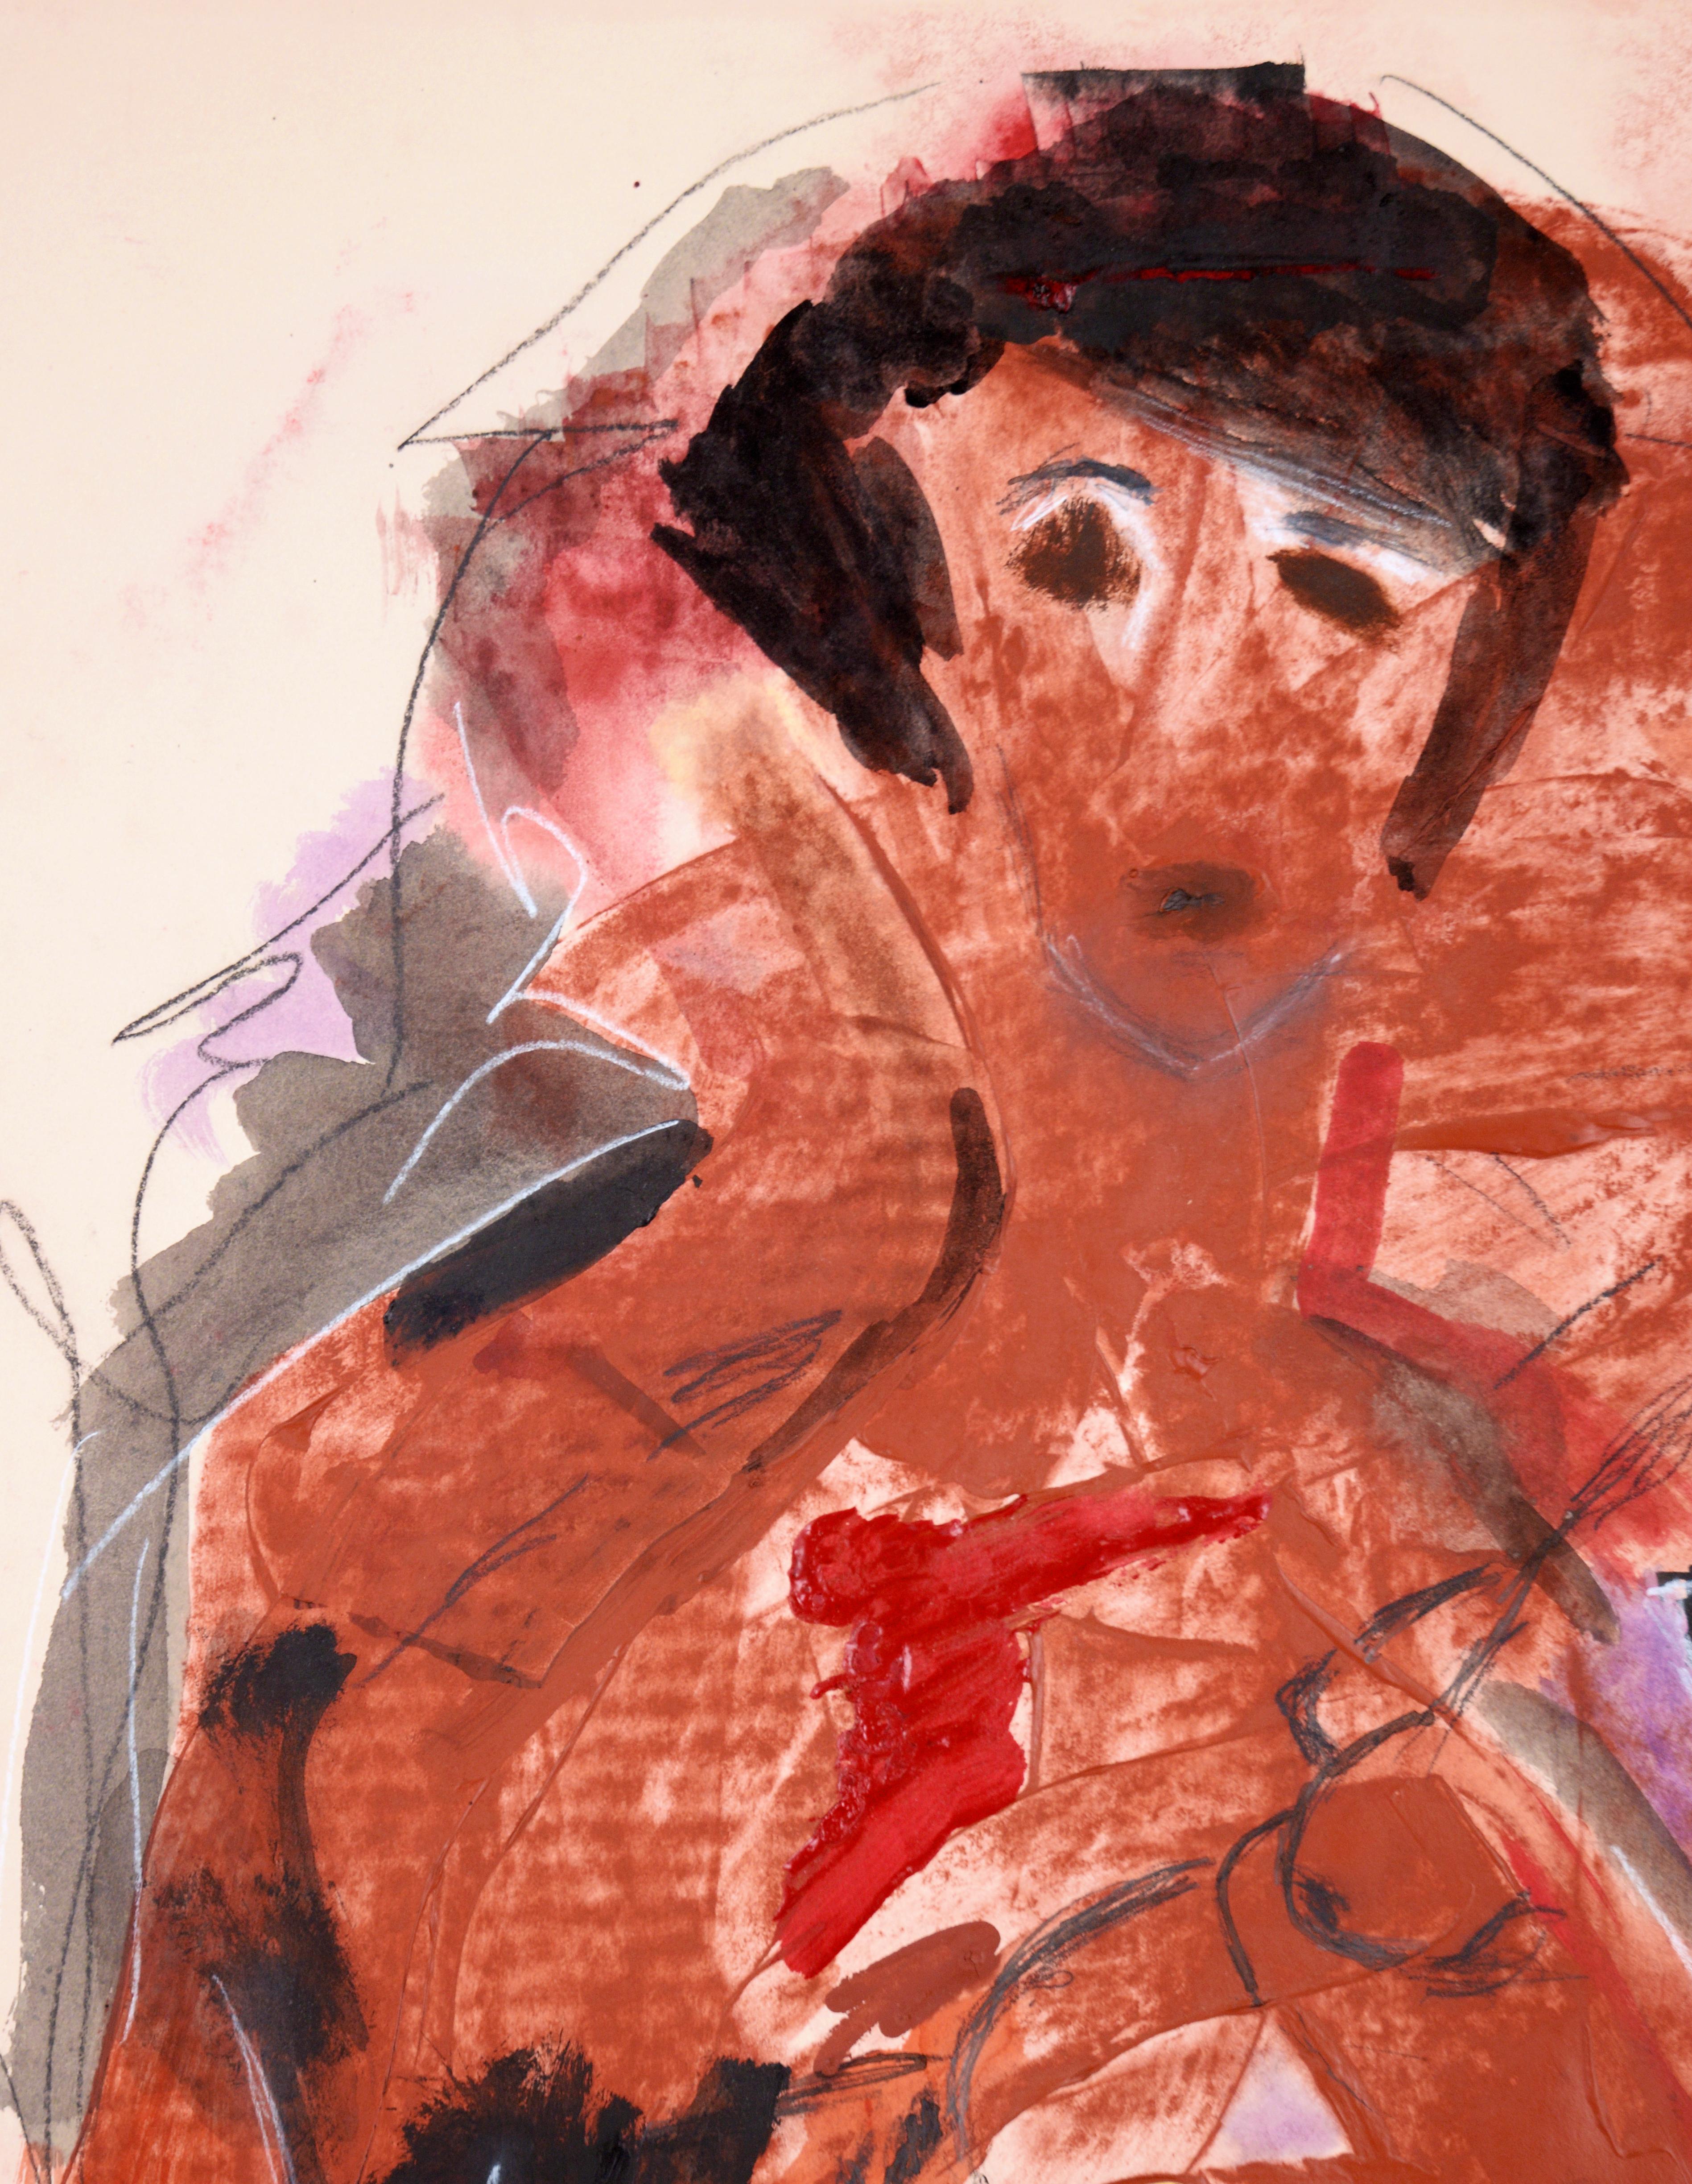 Le cœur qui saigne d'Alan Partridge - Expressionnisme abstrait
Œuvre d'art recto-verso : Au verso, l'expressionnisme abstrait représente une danseuse en robe corail. 

Une peinture abstraite discrète en noir corbeau et terre d'ombre brûlée, avec un